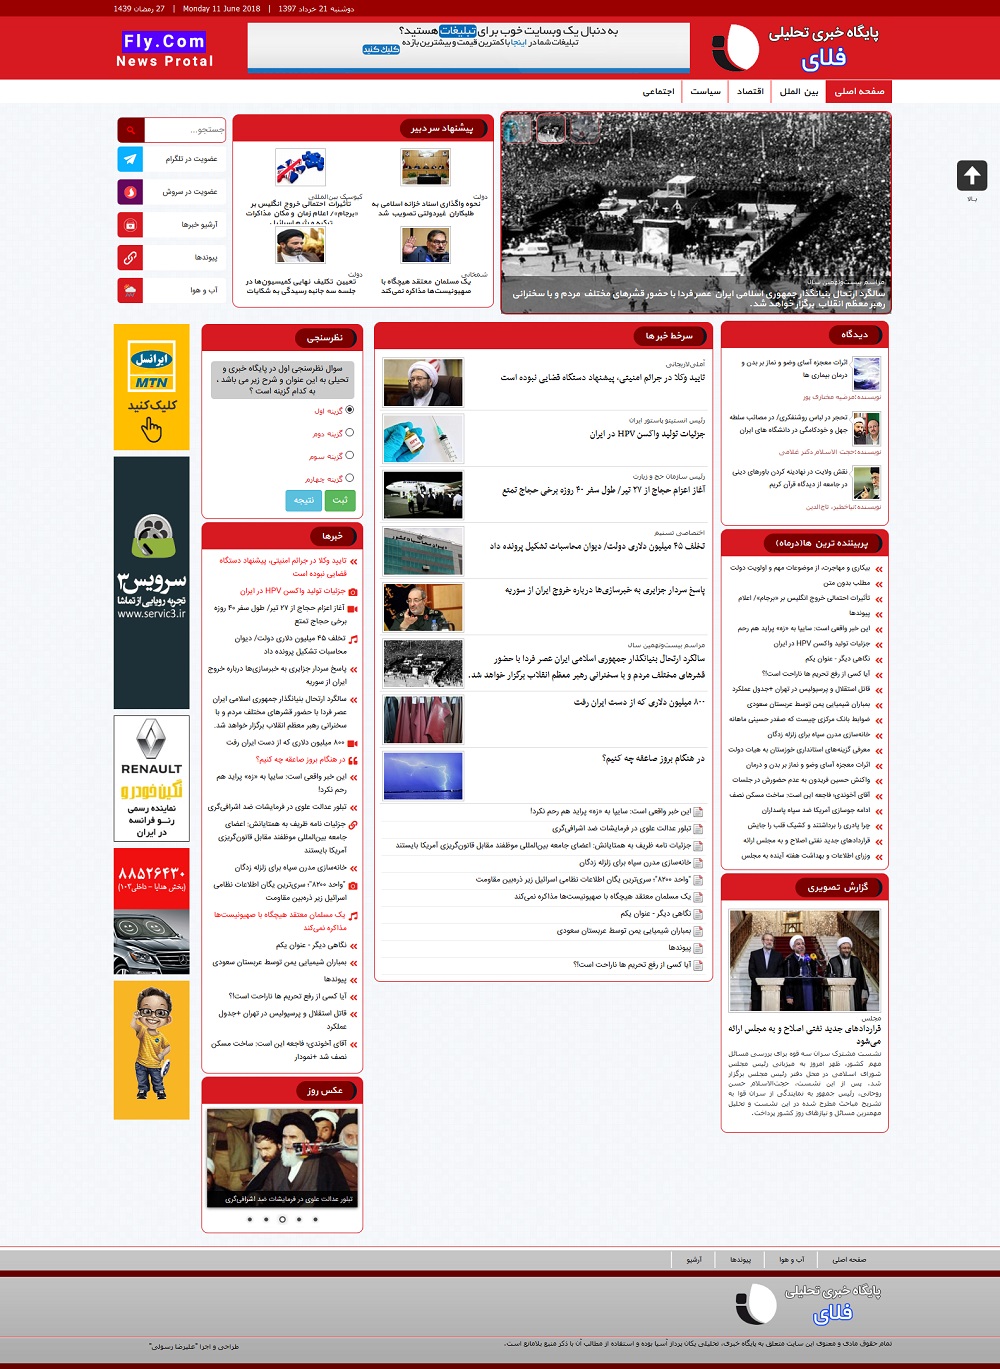 قالب fly news | قالب فلای نیوز قالب جوملا خبری فلای نیوز نگارش 1 محصول اورجینال ایرانی